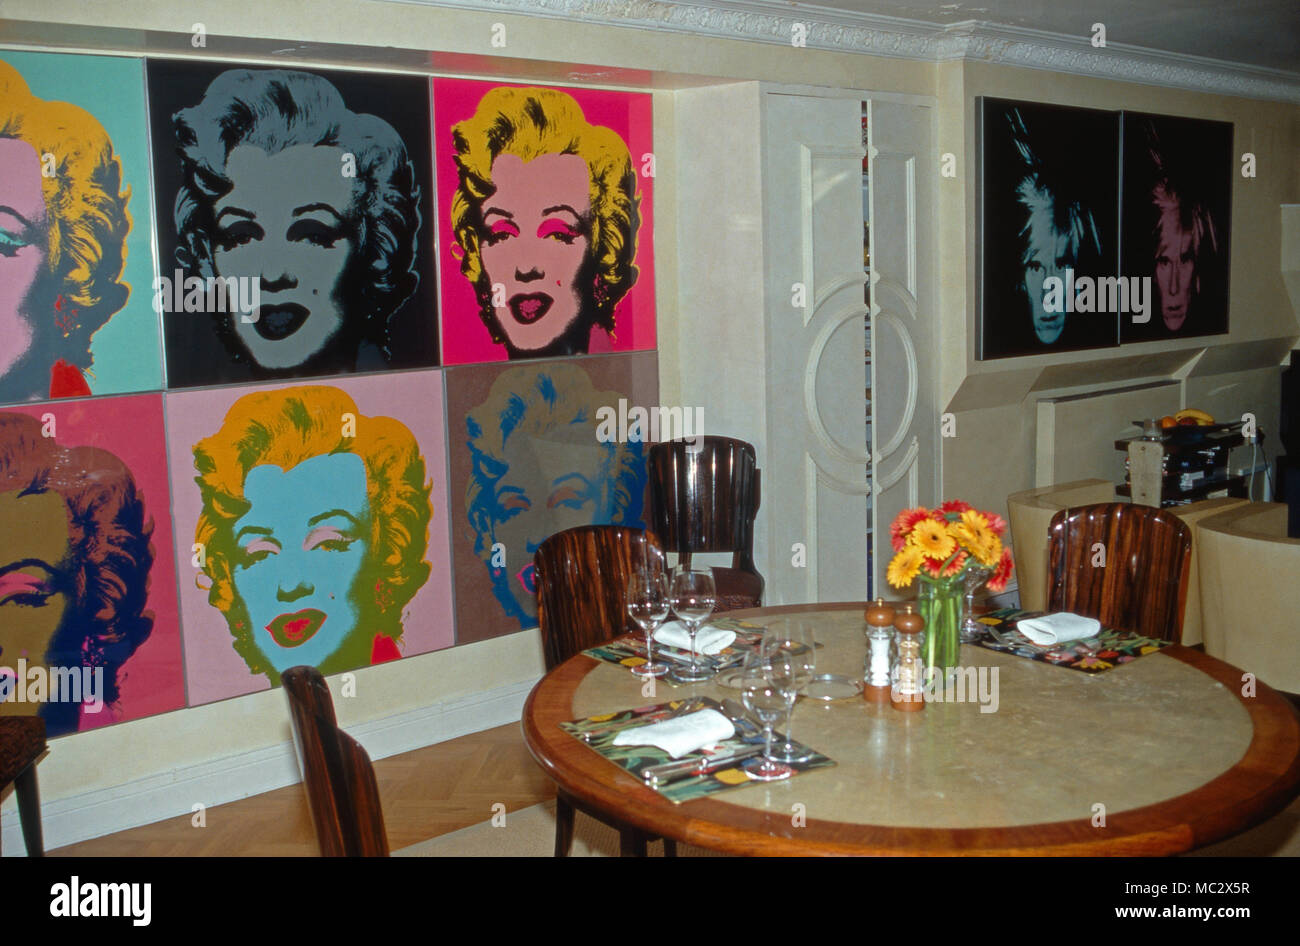 Der Druck 'Marilyn Monroe' von Andy Warhol im Haus von Gunter Sachs. Andy Warhol's print 'Marilyn Monroe' at the house of Gunter Sachs. Stock Photo